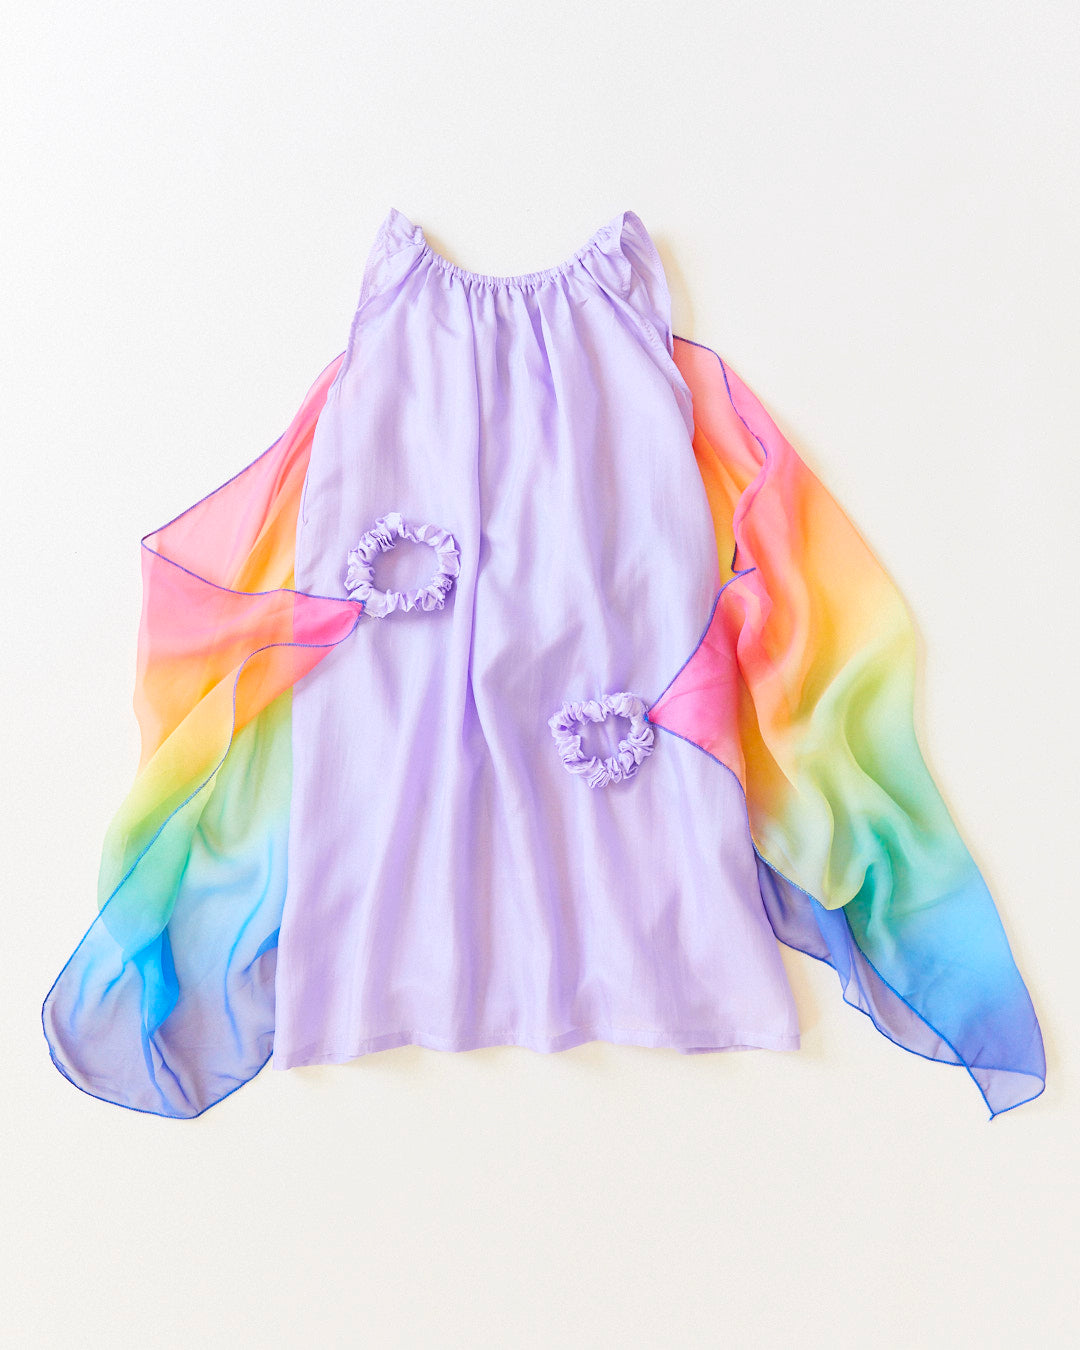 fairy dress | purple + rainbow